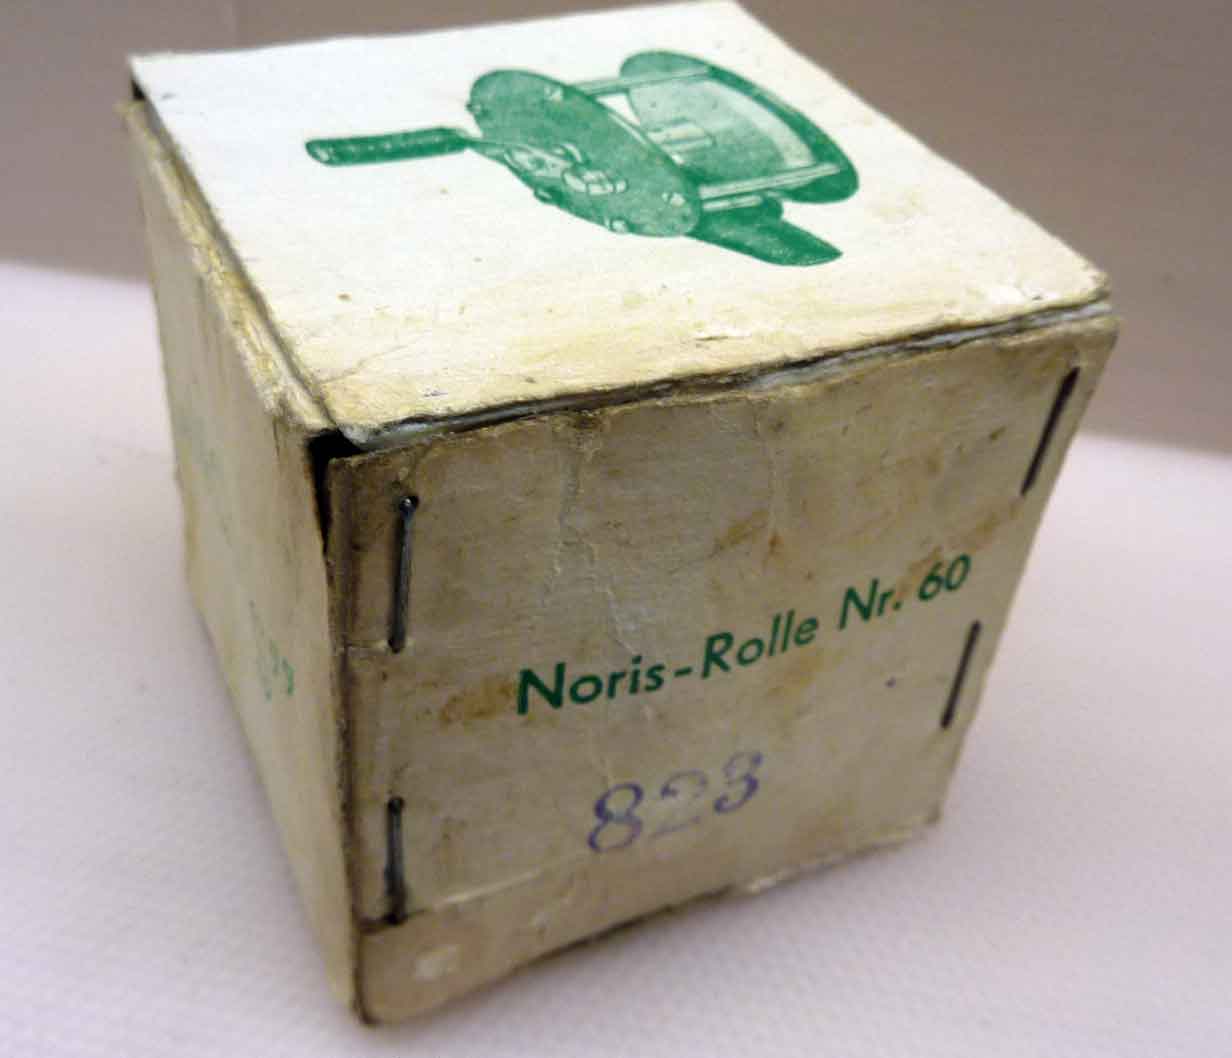 Der Karton trägt die Bestellnummer 60 wie im Noris-Katalog der 1950er Jahre, wurde aber mit der ominösen Nr. 823 überstempelt. In den 1960er Jahren hatte die Rolle eigentlich die Nummer 2331.